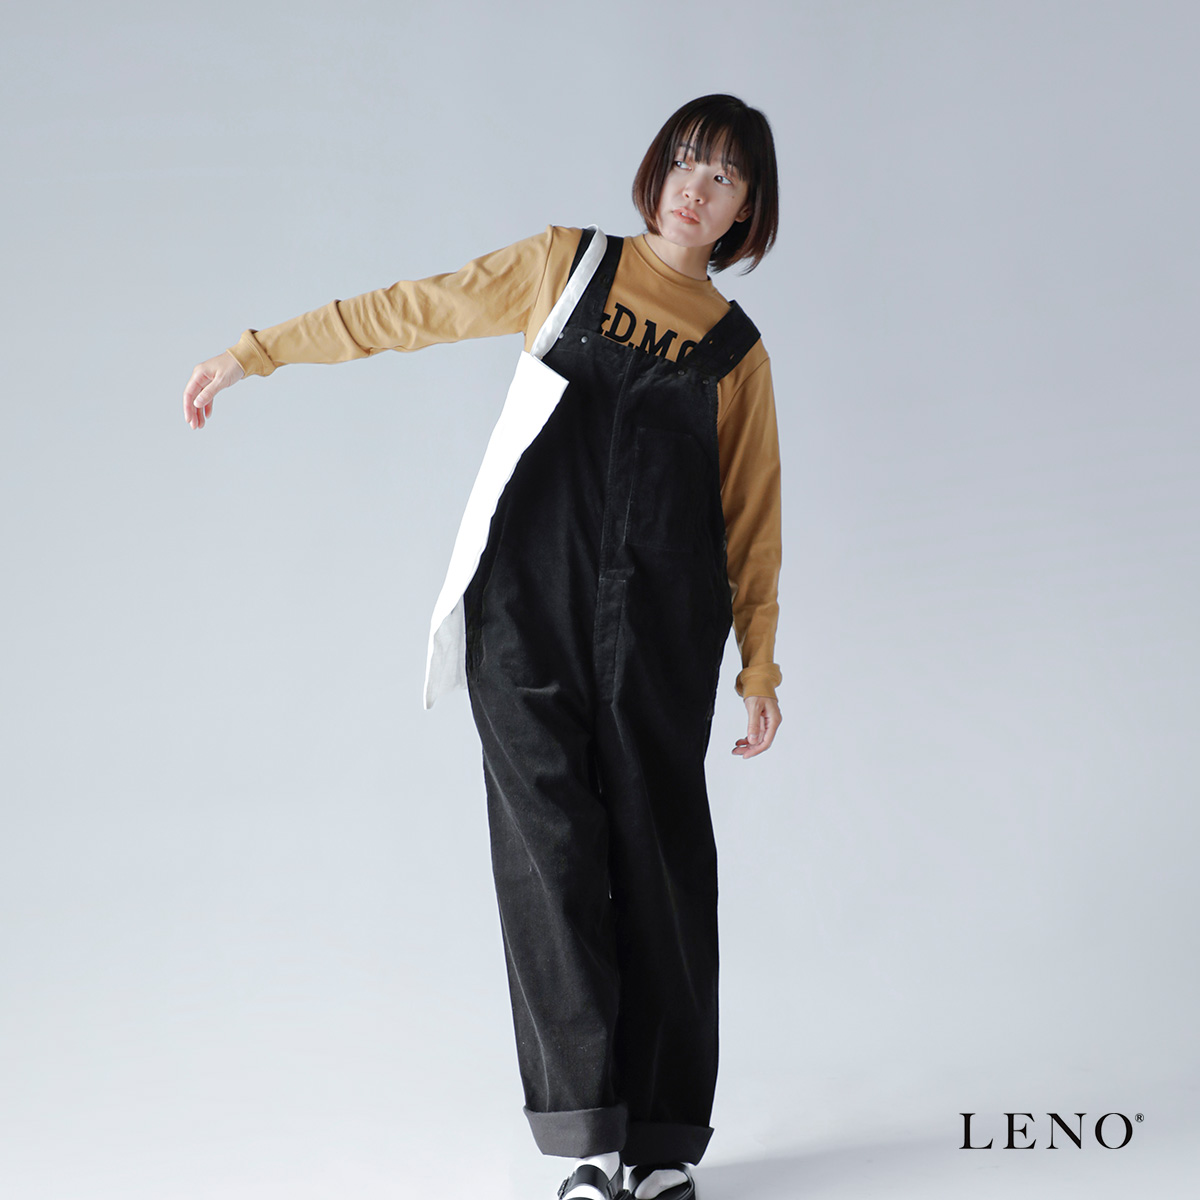 LENO(リノ)14WALE コーデュロイ オーバーオール leno-pt023